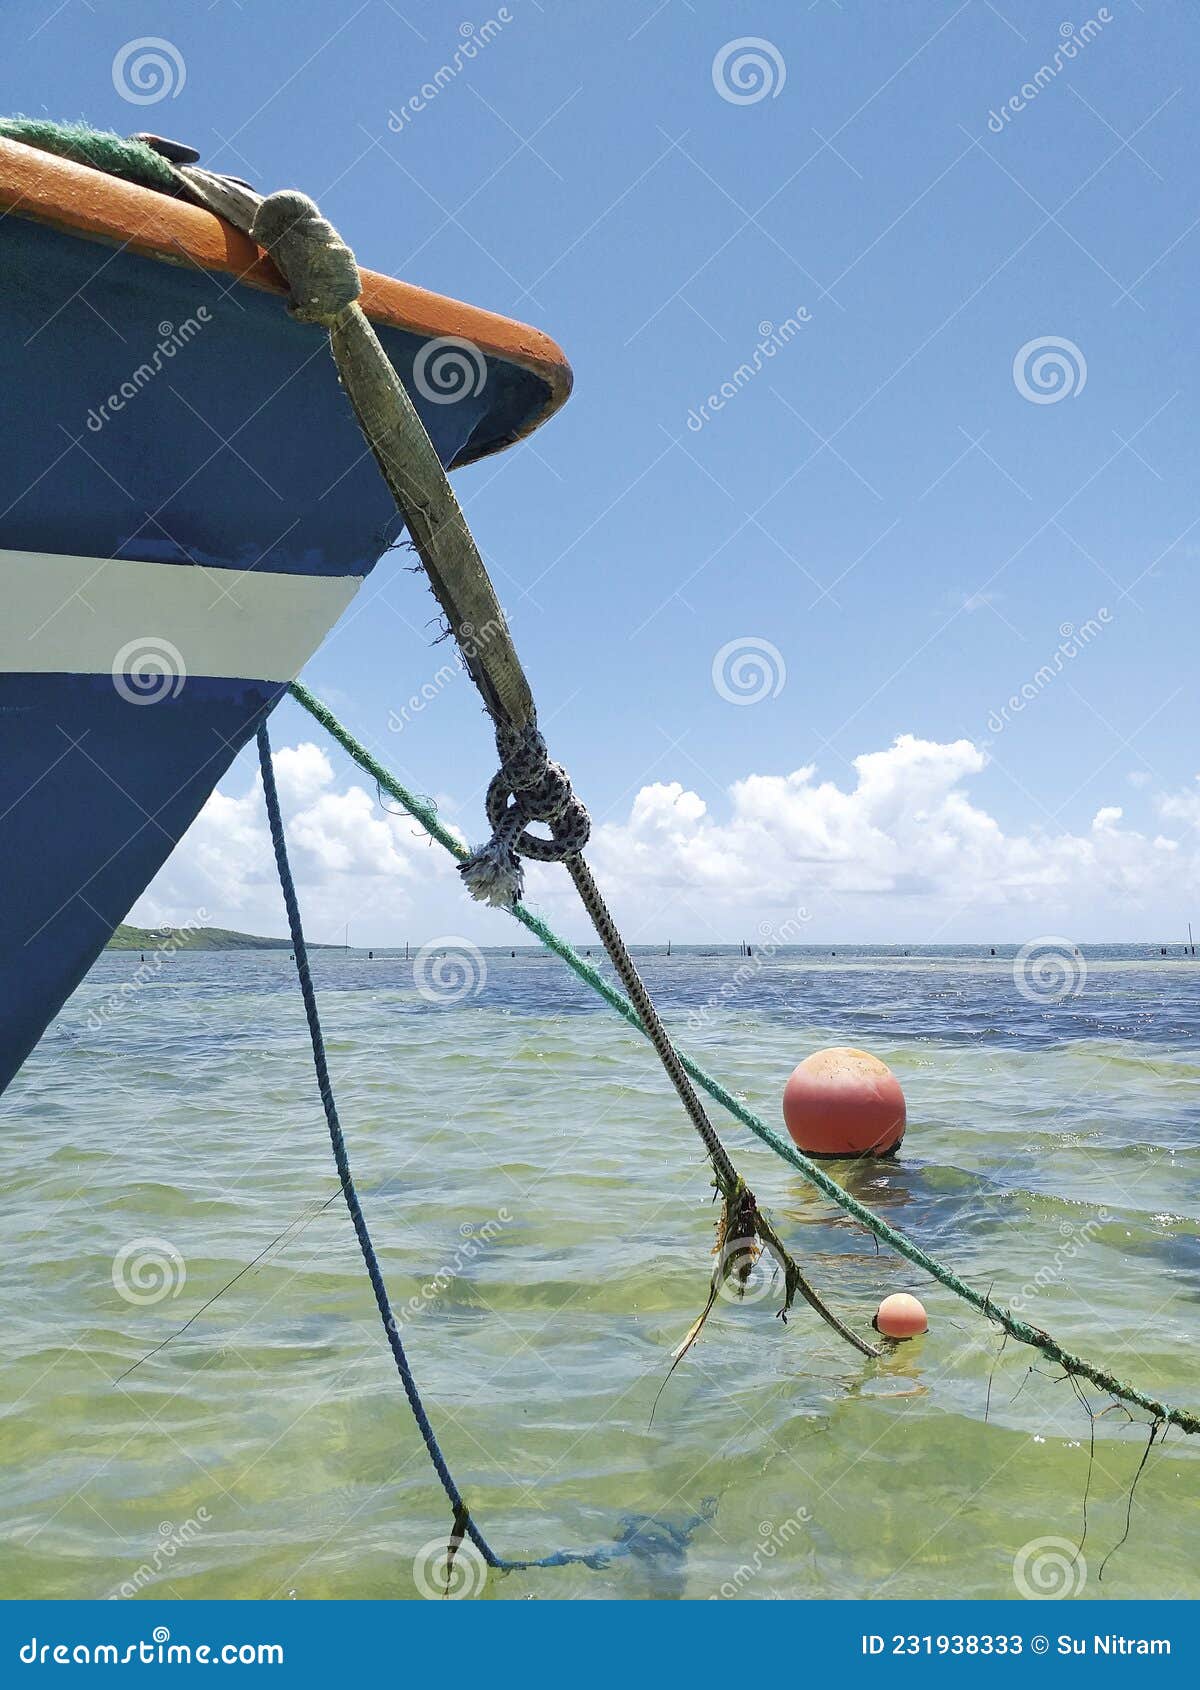 Arco De Un Típico Barco De Pesca Caribeño Encadenado a Una Boya